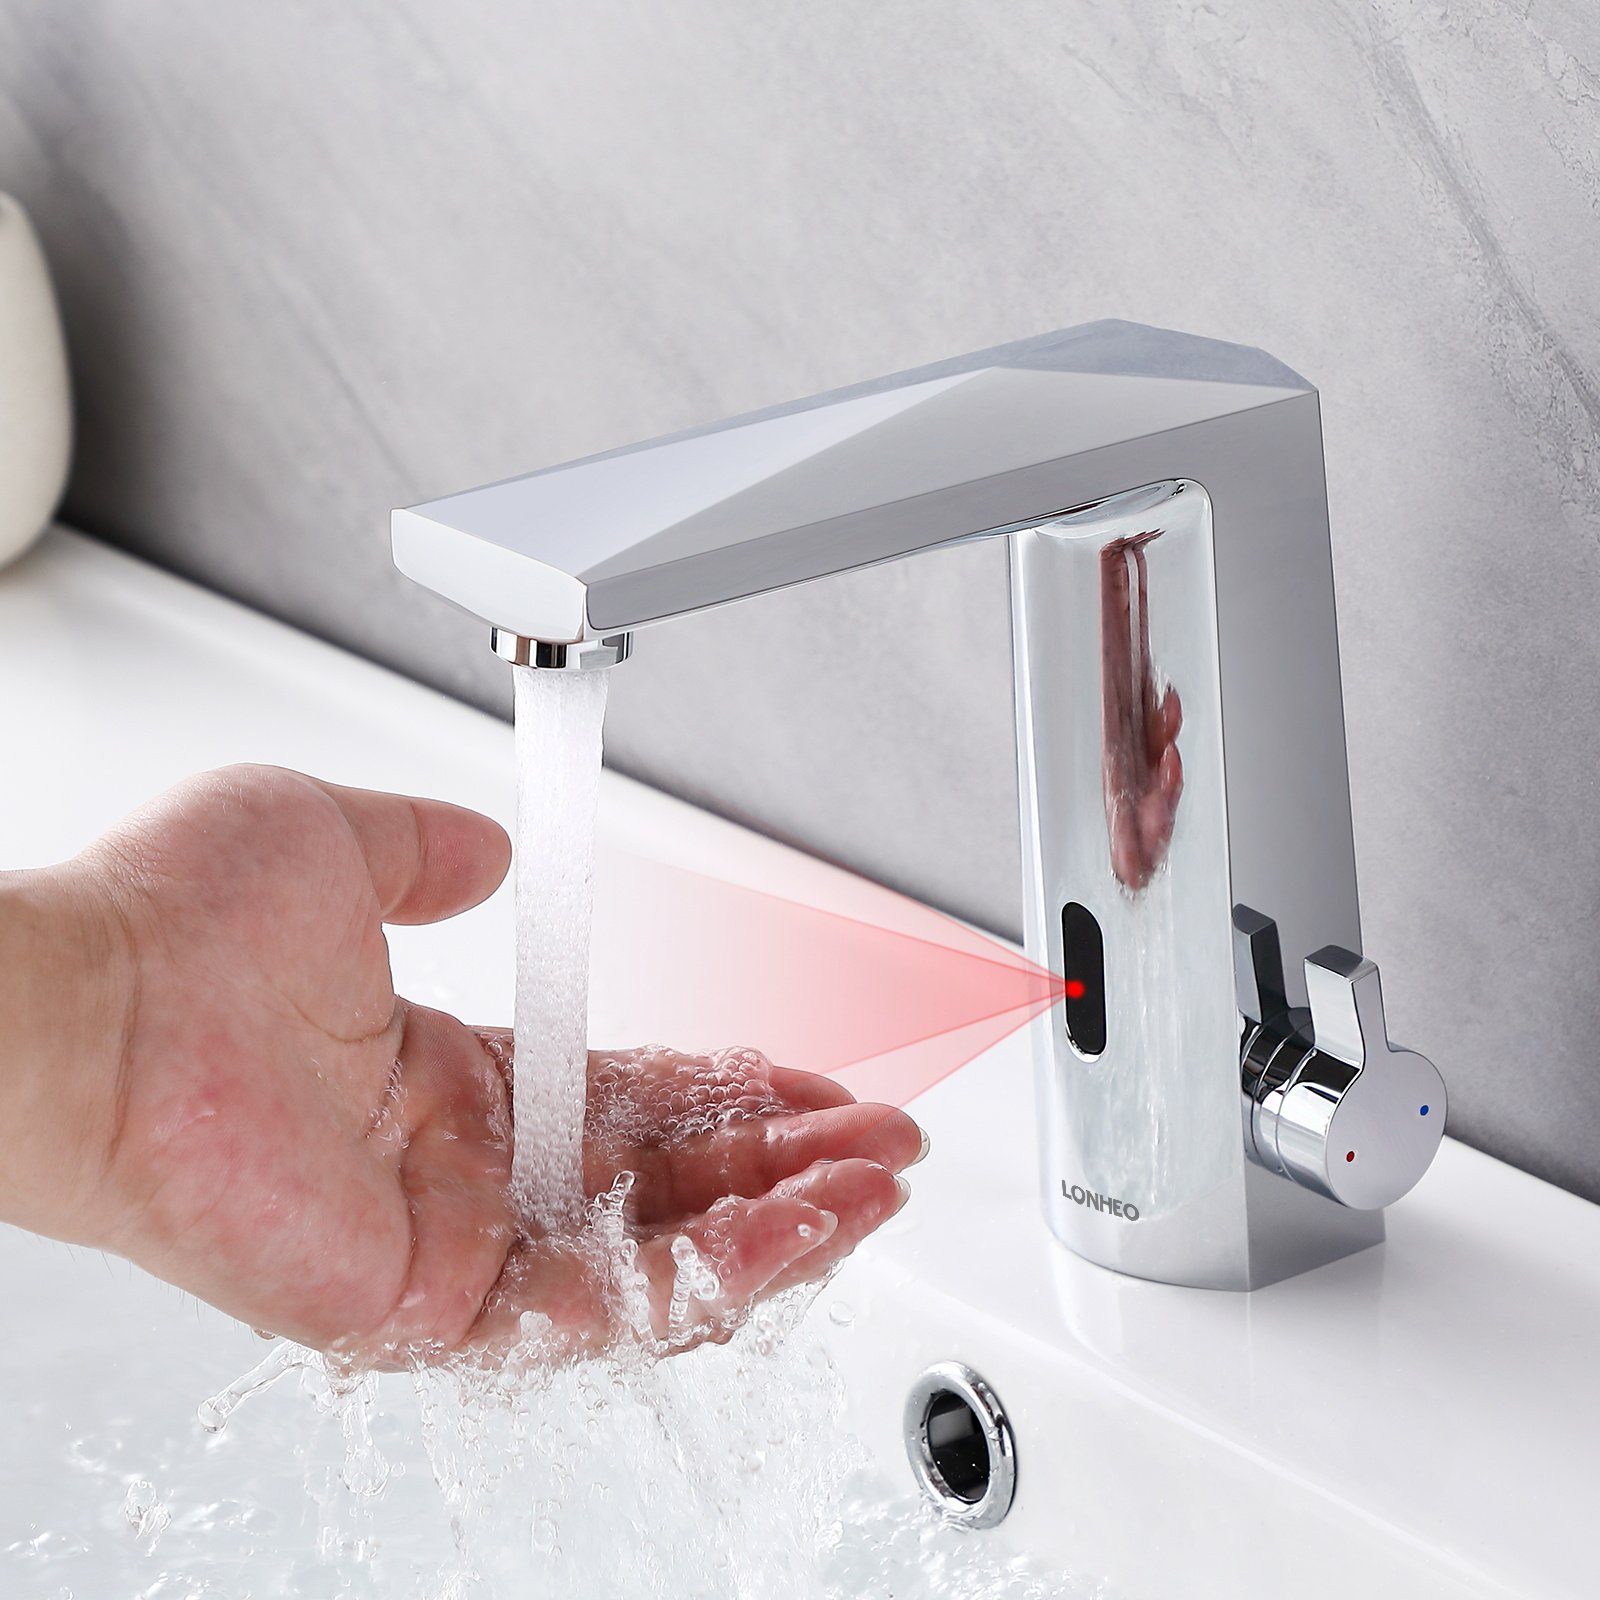 Auralum Waschtischarmatur Lonheo Infrarot Sensor Wasserhahn Bad Armatur, Automatisch Induktion Chrom | Waschtischarmaturen